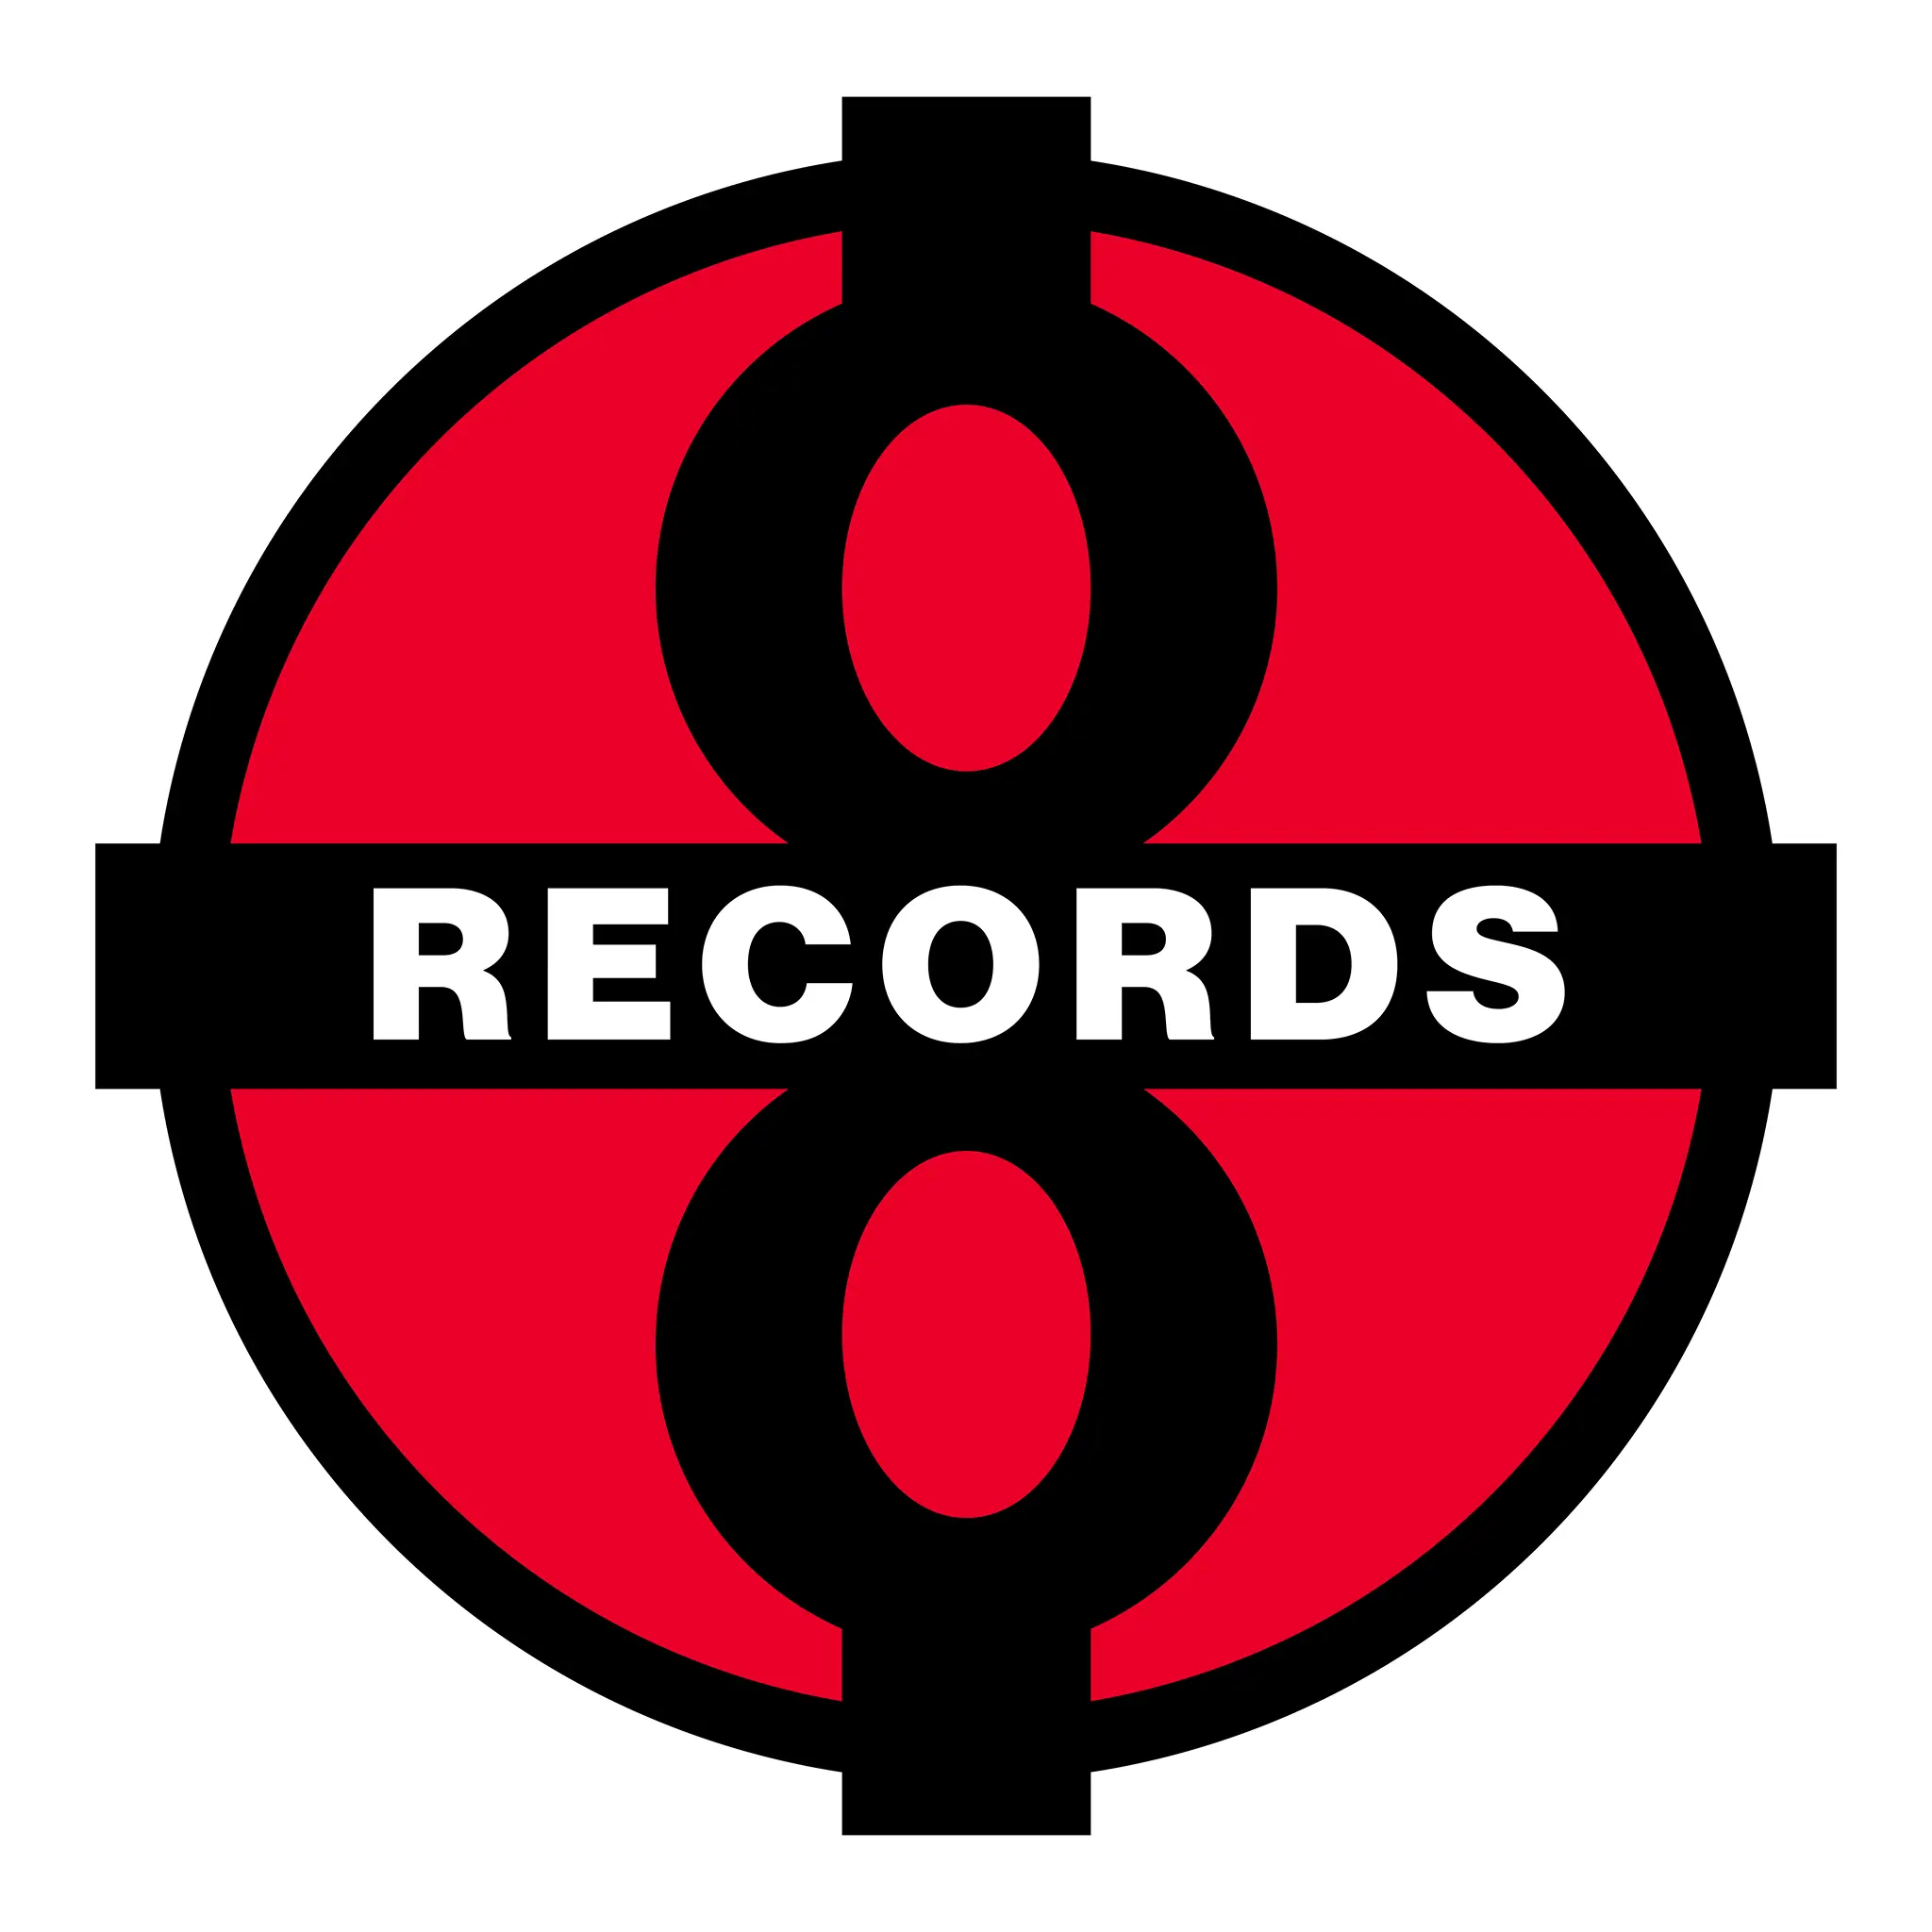 Plus 8 Records